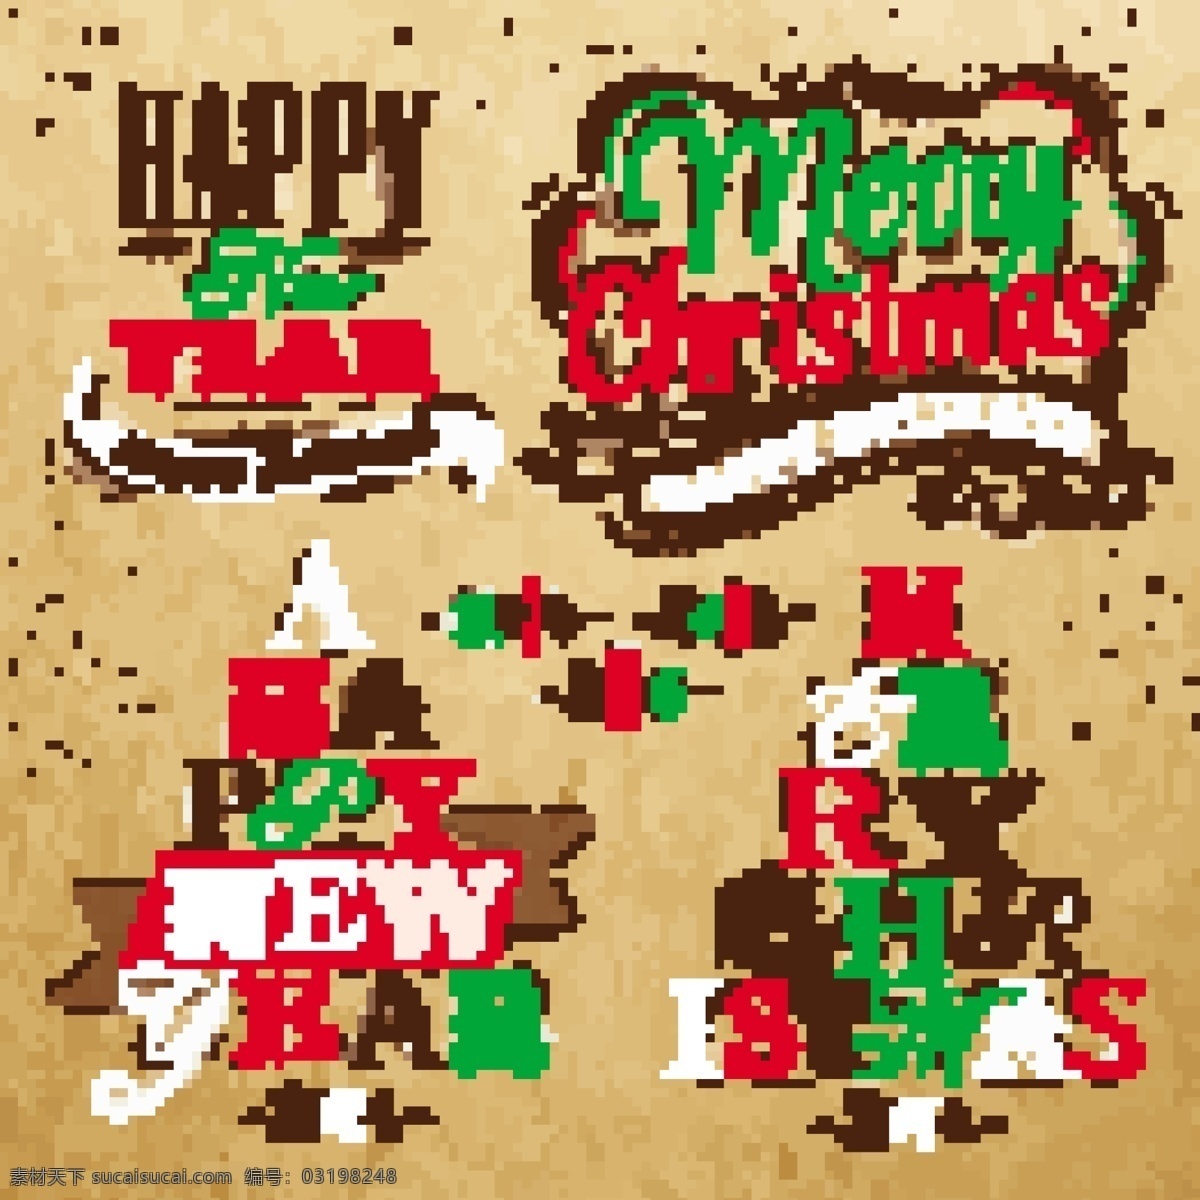 2014年 christmas logo merry 彩绘 节日素材 圣诞 圣诞节 圣诞树 艺术 字 矢量 模板下载 装饰 矢量图 艺术字 矢量素材 2015羊年